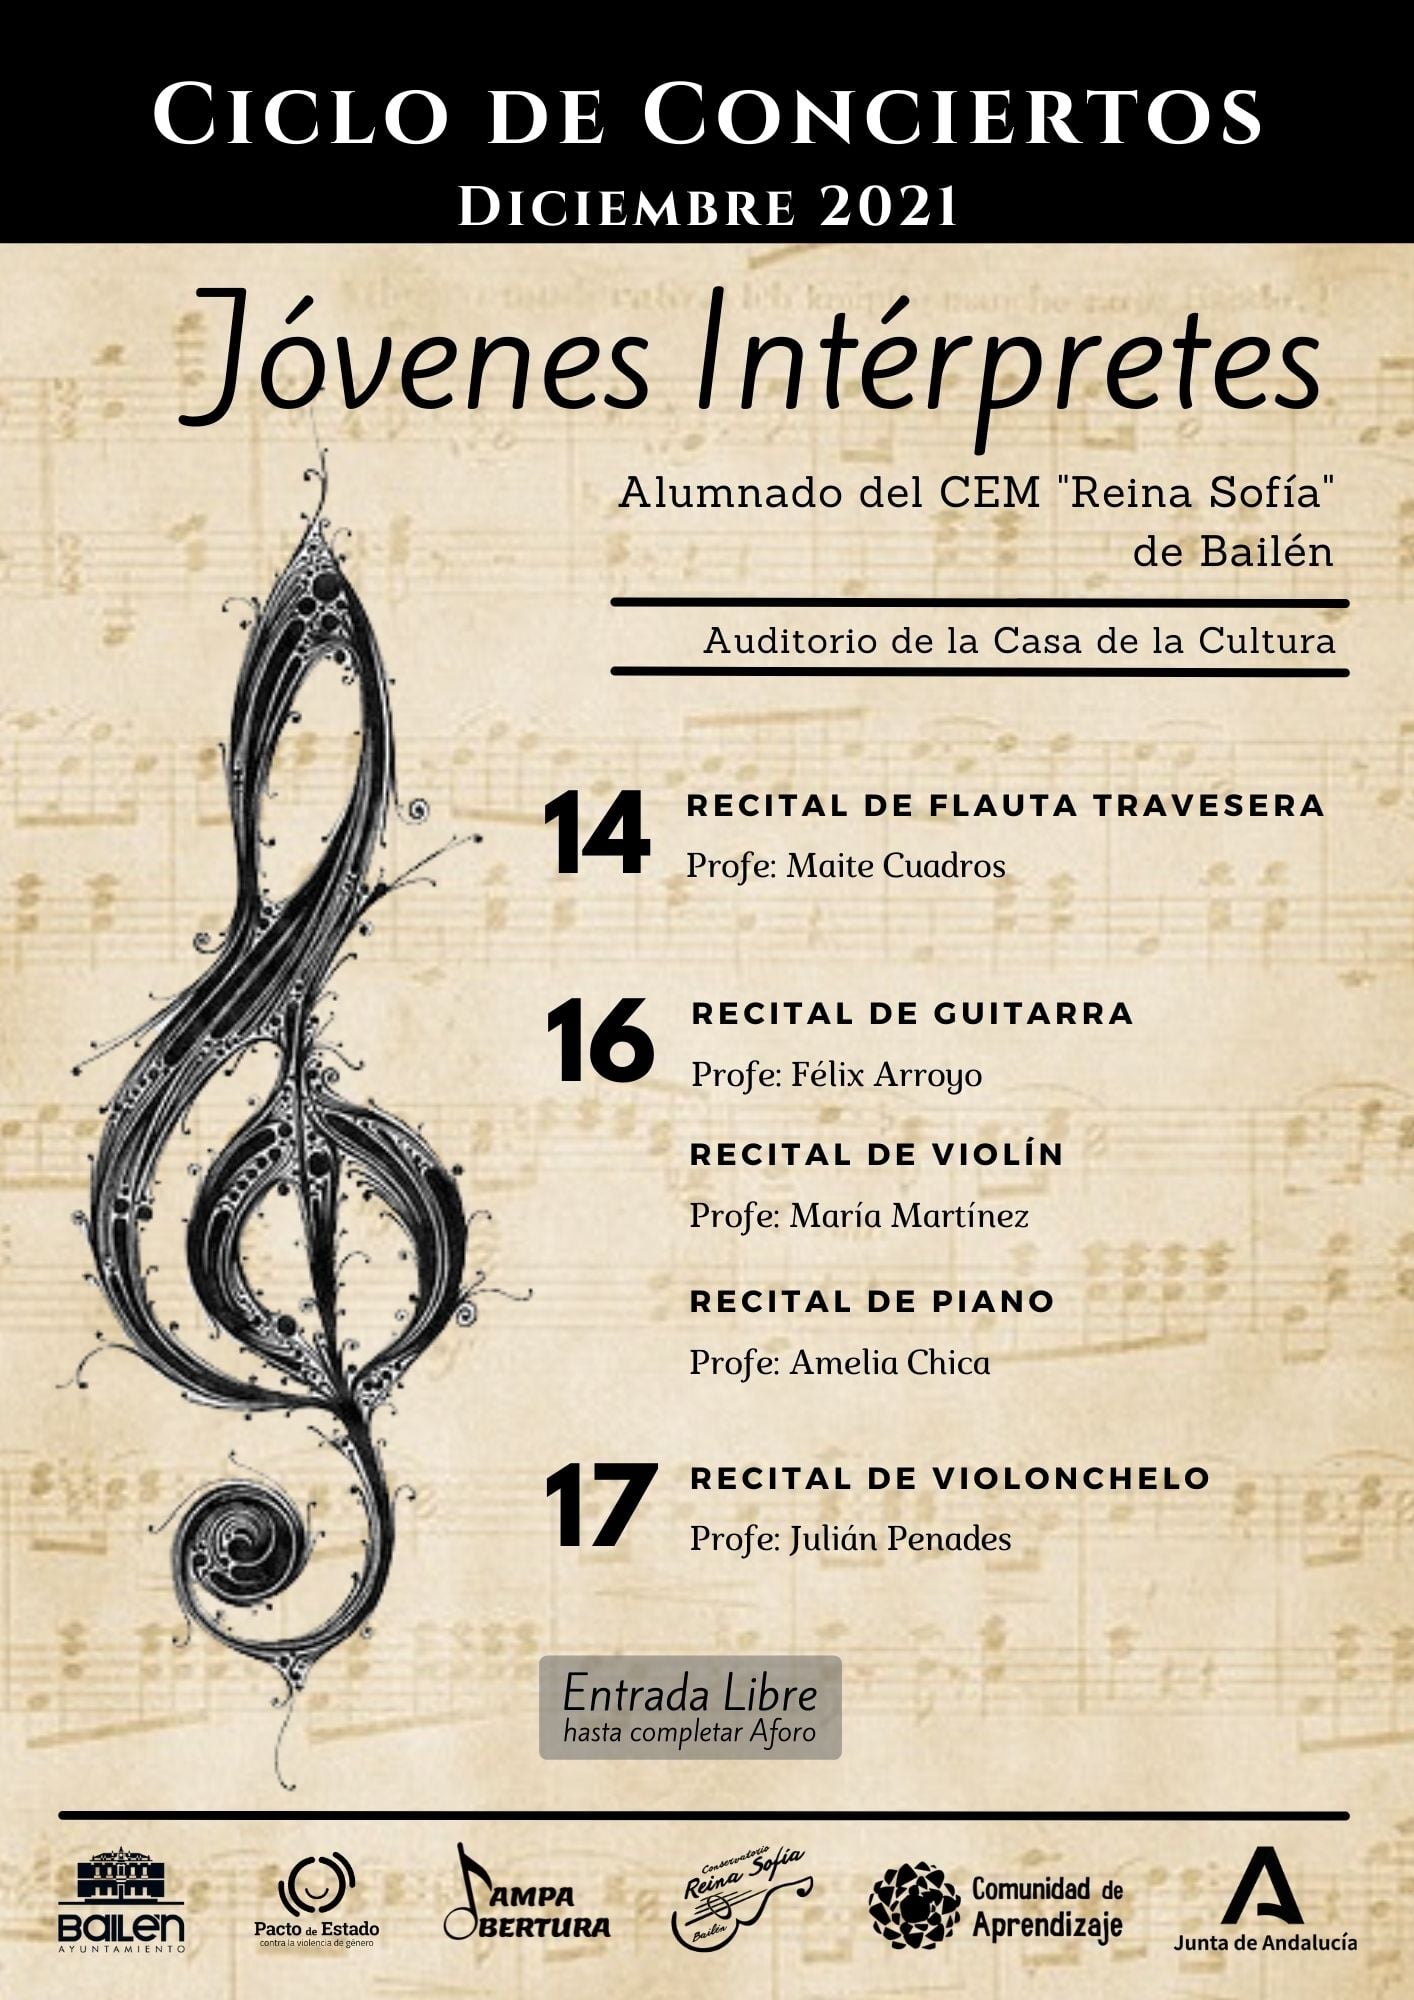 Comienza el recital de Jóvenes Interpretes